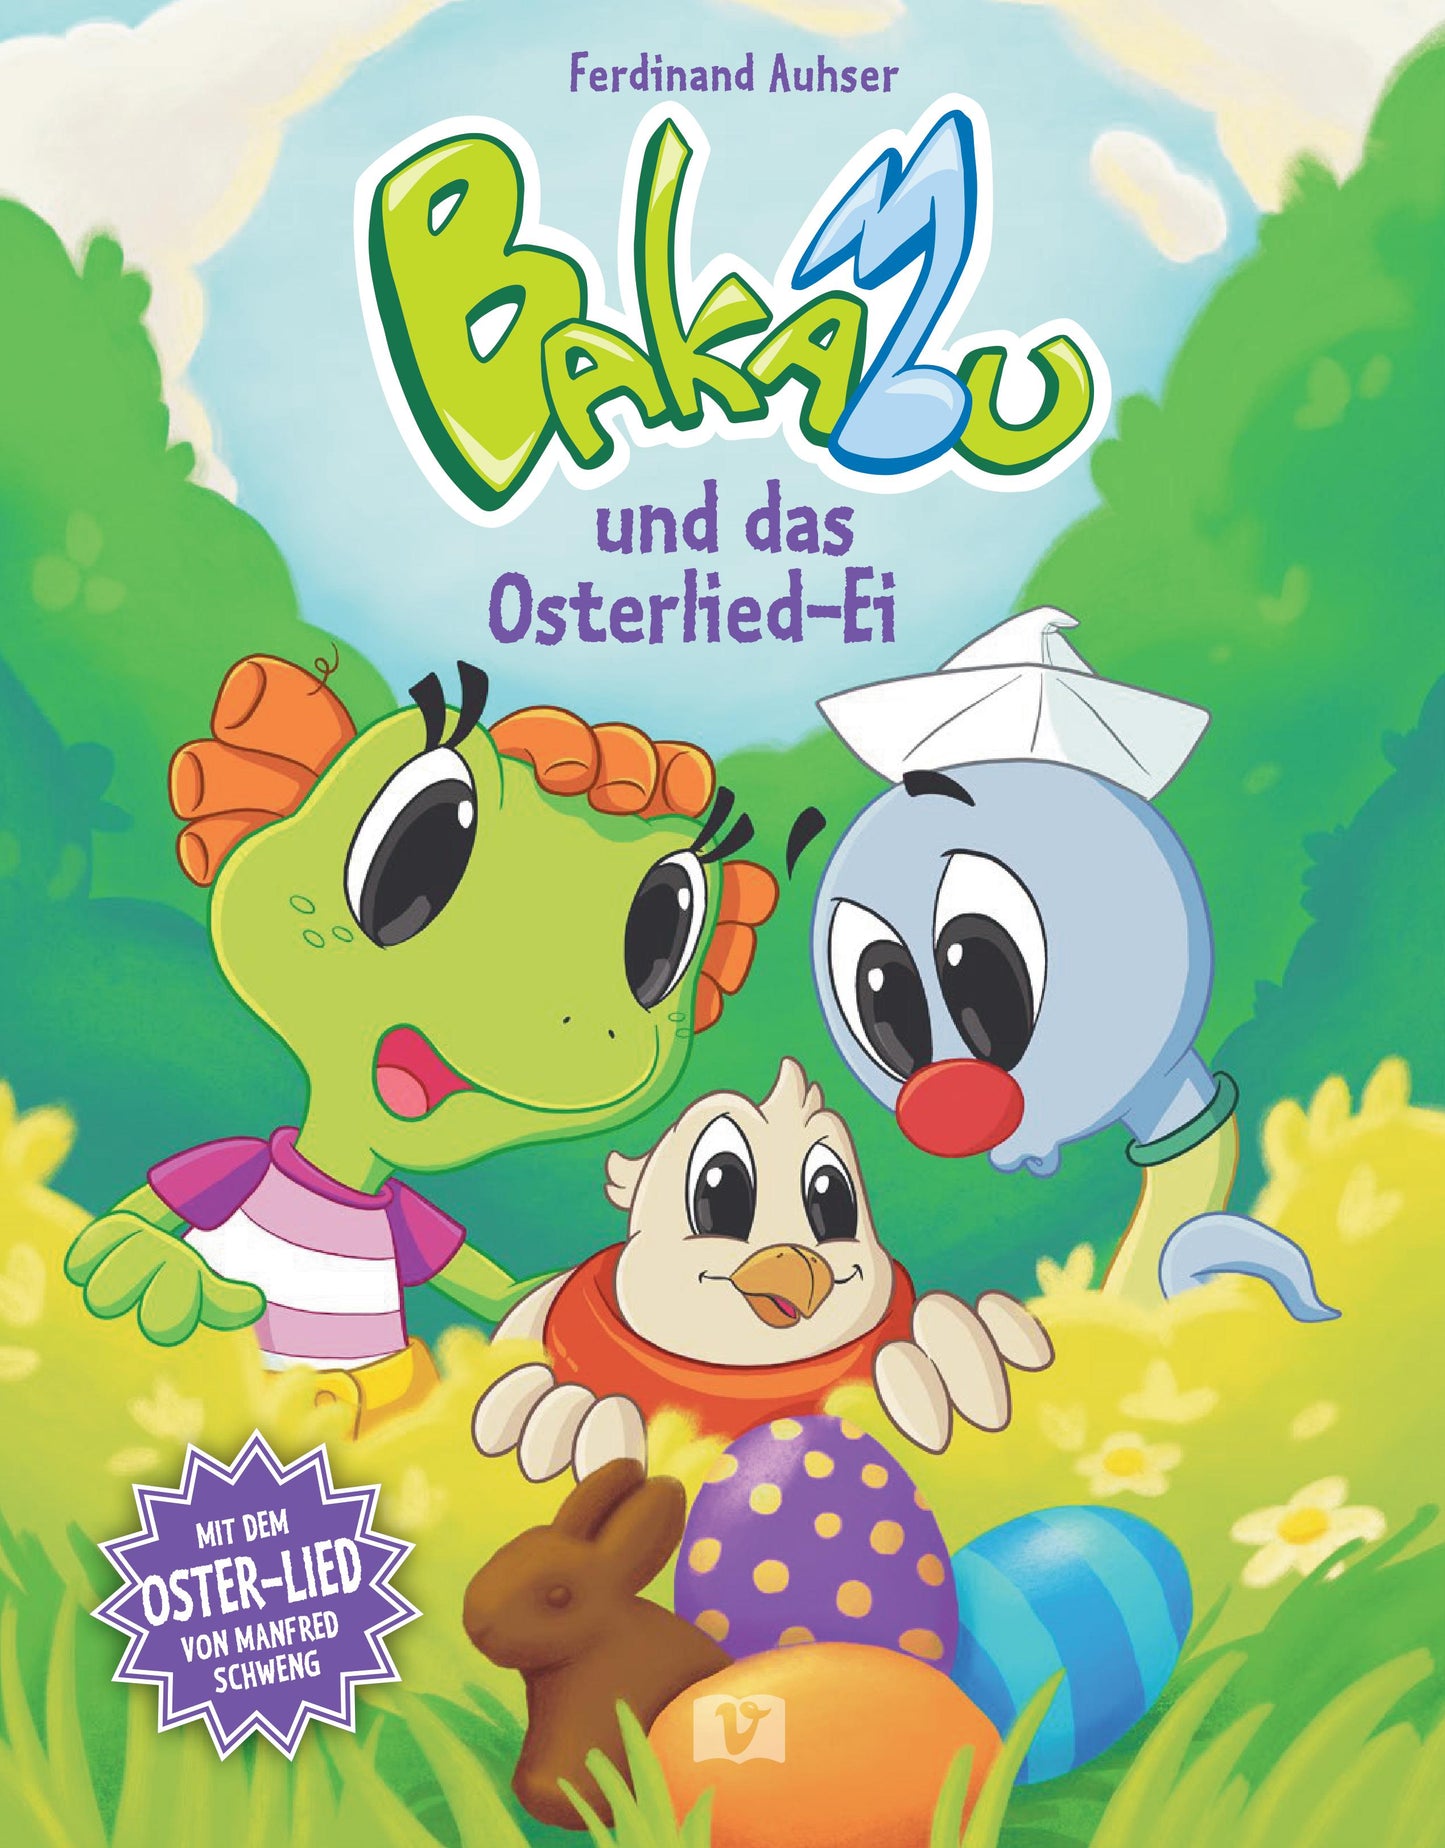 Bakabu und das Osterlied-Ei - Buch